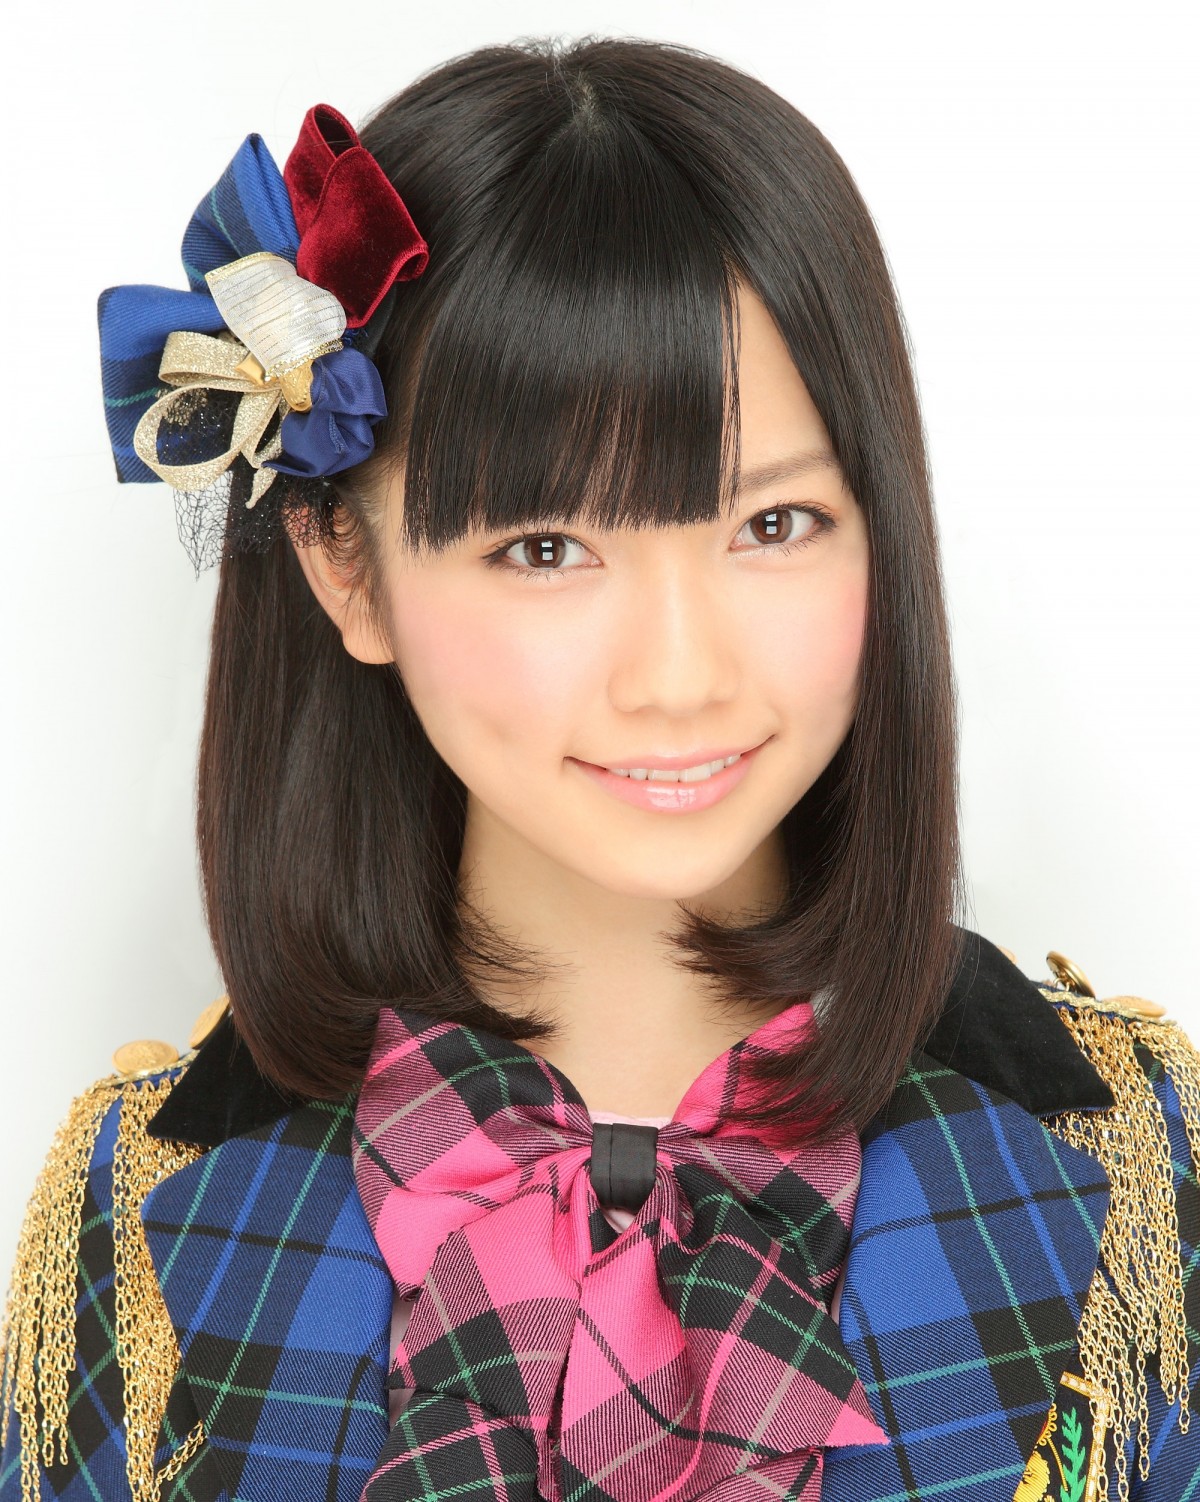 「第6回AKB48選抜総選挙」で第7位となった島崎遥香は、スピーチも塩対応！